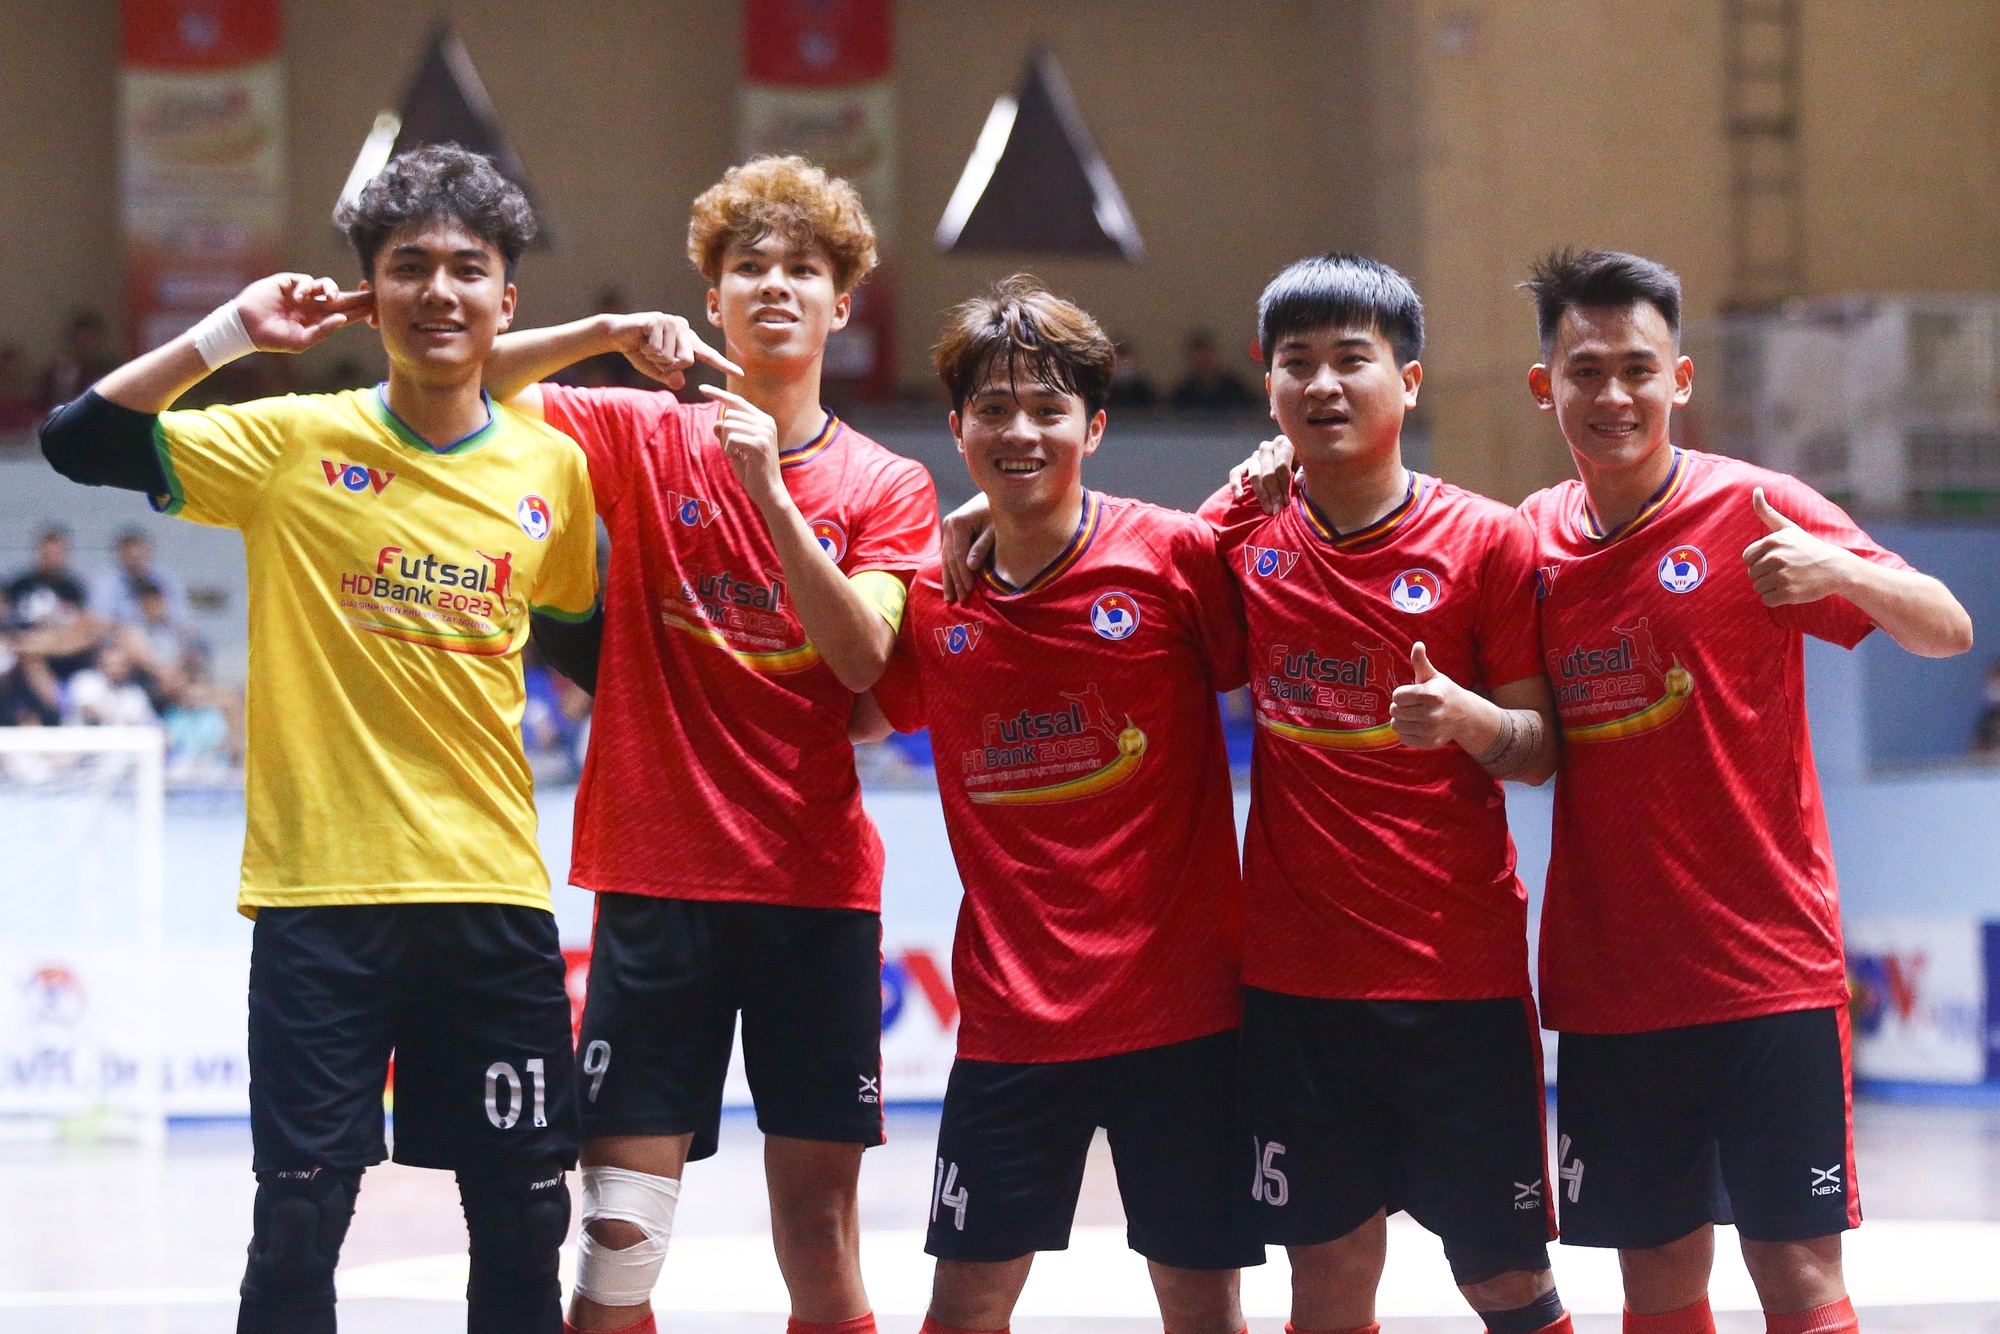 Các cầu thủ Trường ĐH Đà Lạt ăn mừng bàn thắng ở giải futsal sinh viên khu vực Tây Nguyên